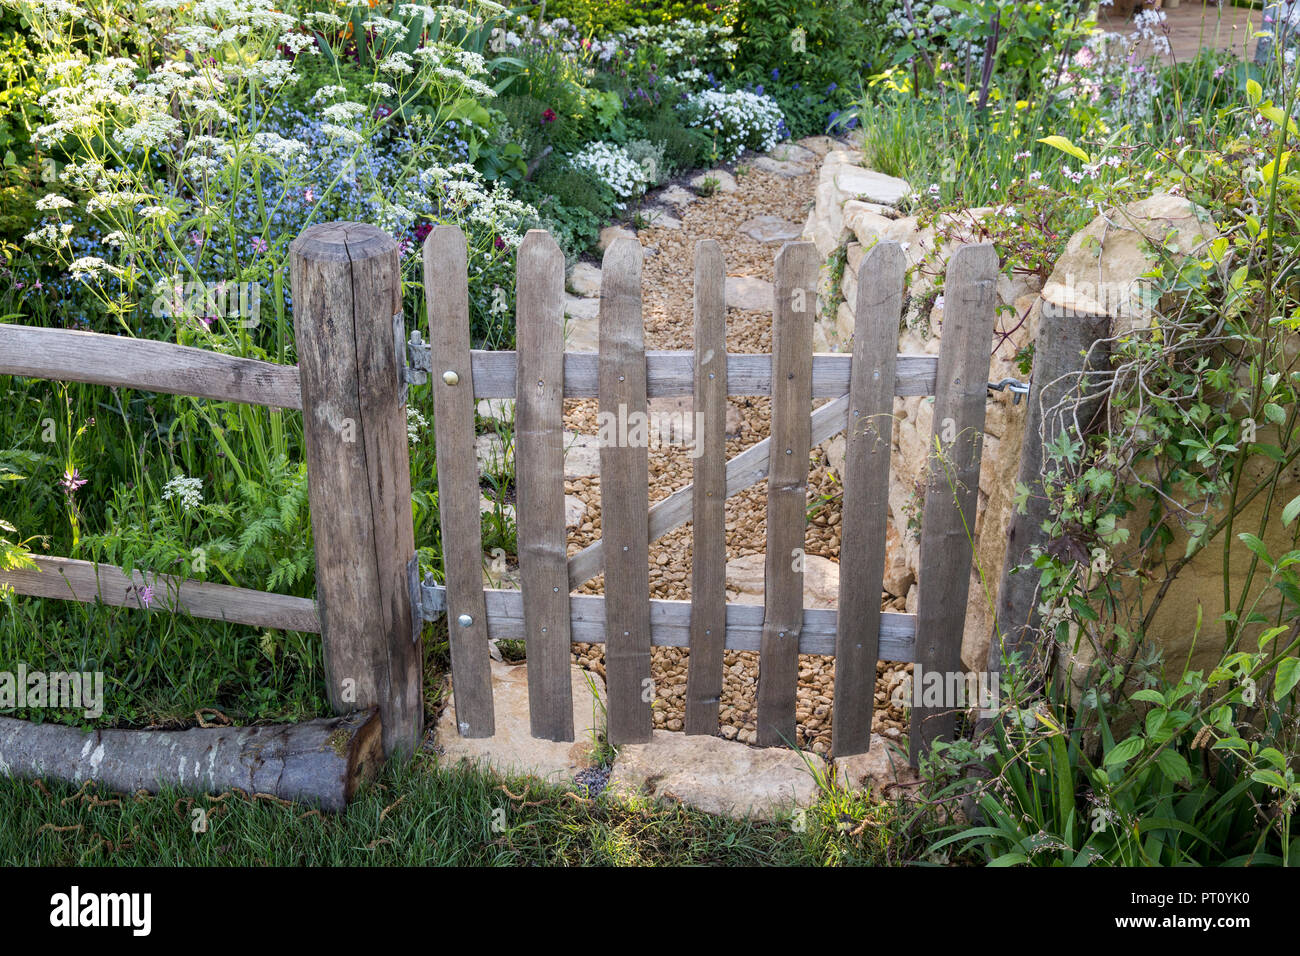 Rustique vieux piquet en bois porte de jardin clôture fleurs sauvages style cottage jardin plantation chemin de gravier Cotswold mur en pierre sèche printemps été Royaume-Uni Banque D'Images